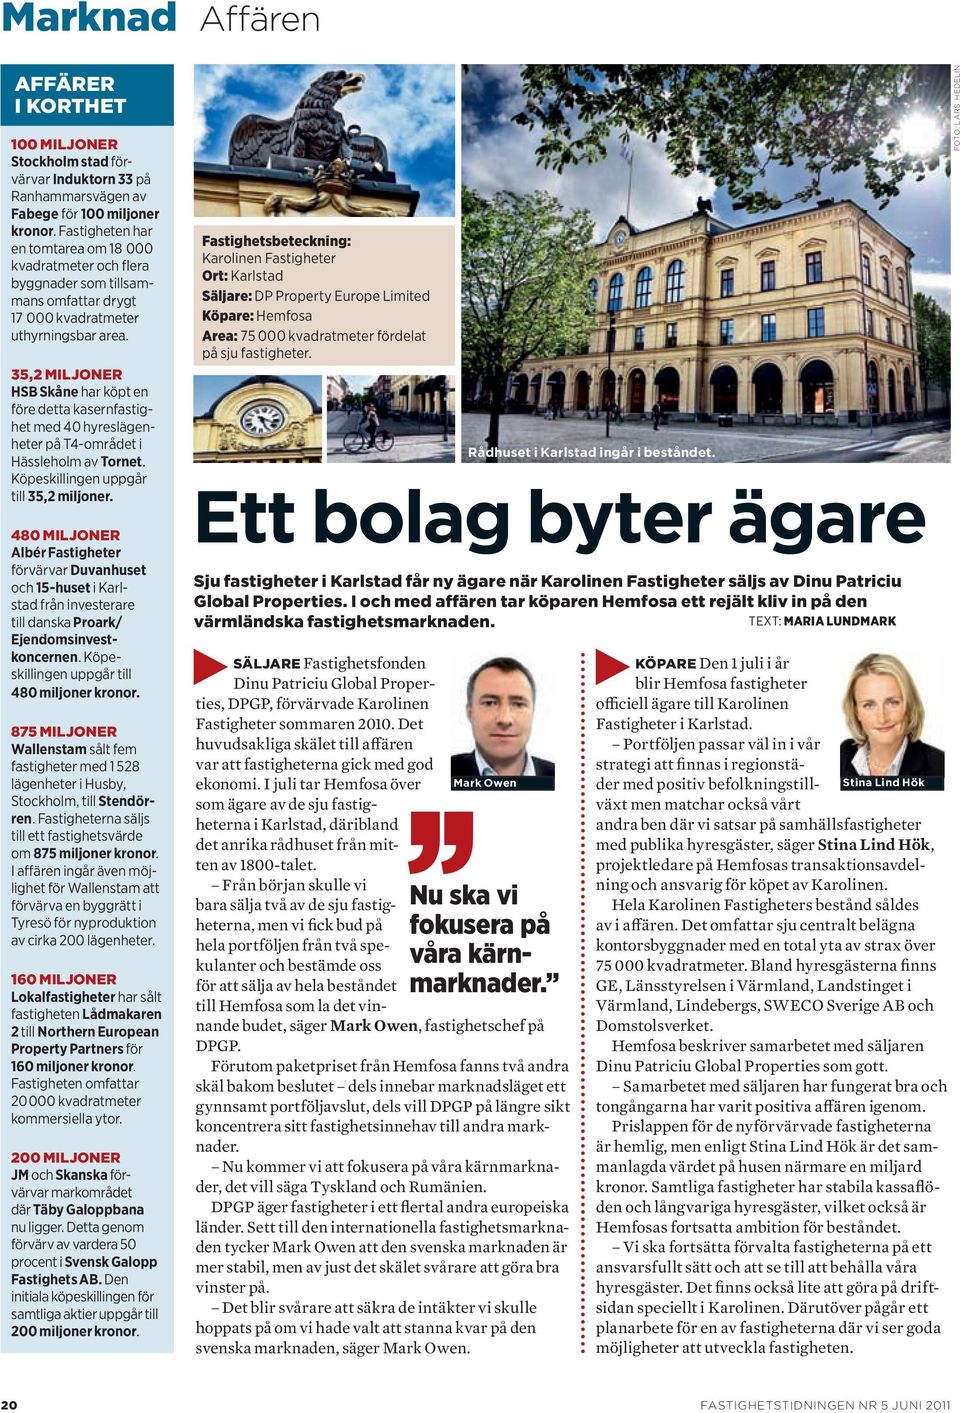 35,2 miljoner HSB Skåne har köpt en före detta kasernfastighet med 40 hyreslägenheter på T4 området i Hässleholm av Tornet. Köpeskillingen uppgår till 35,2 miljoner.